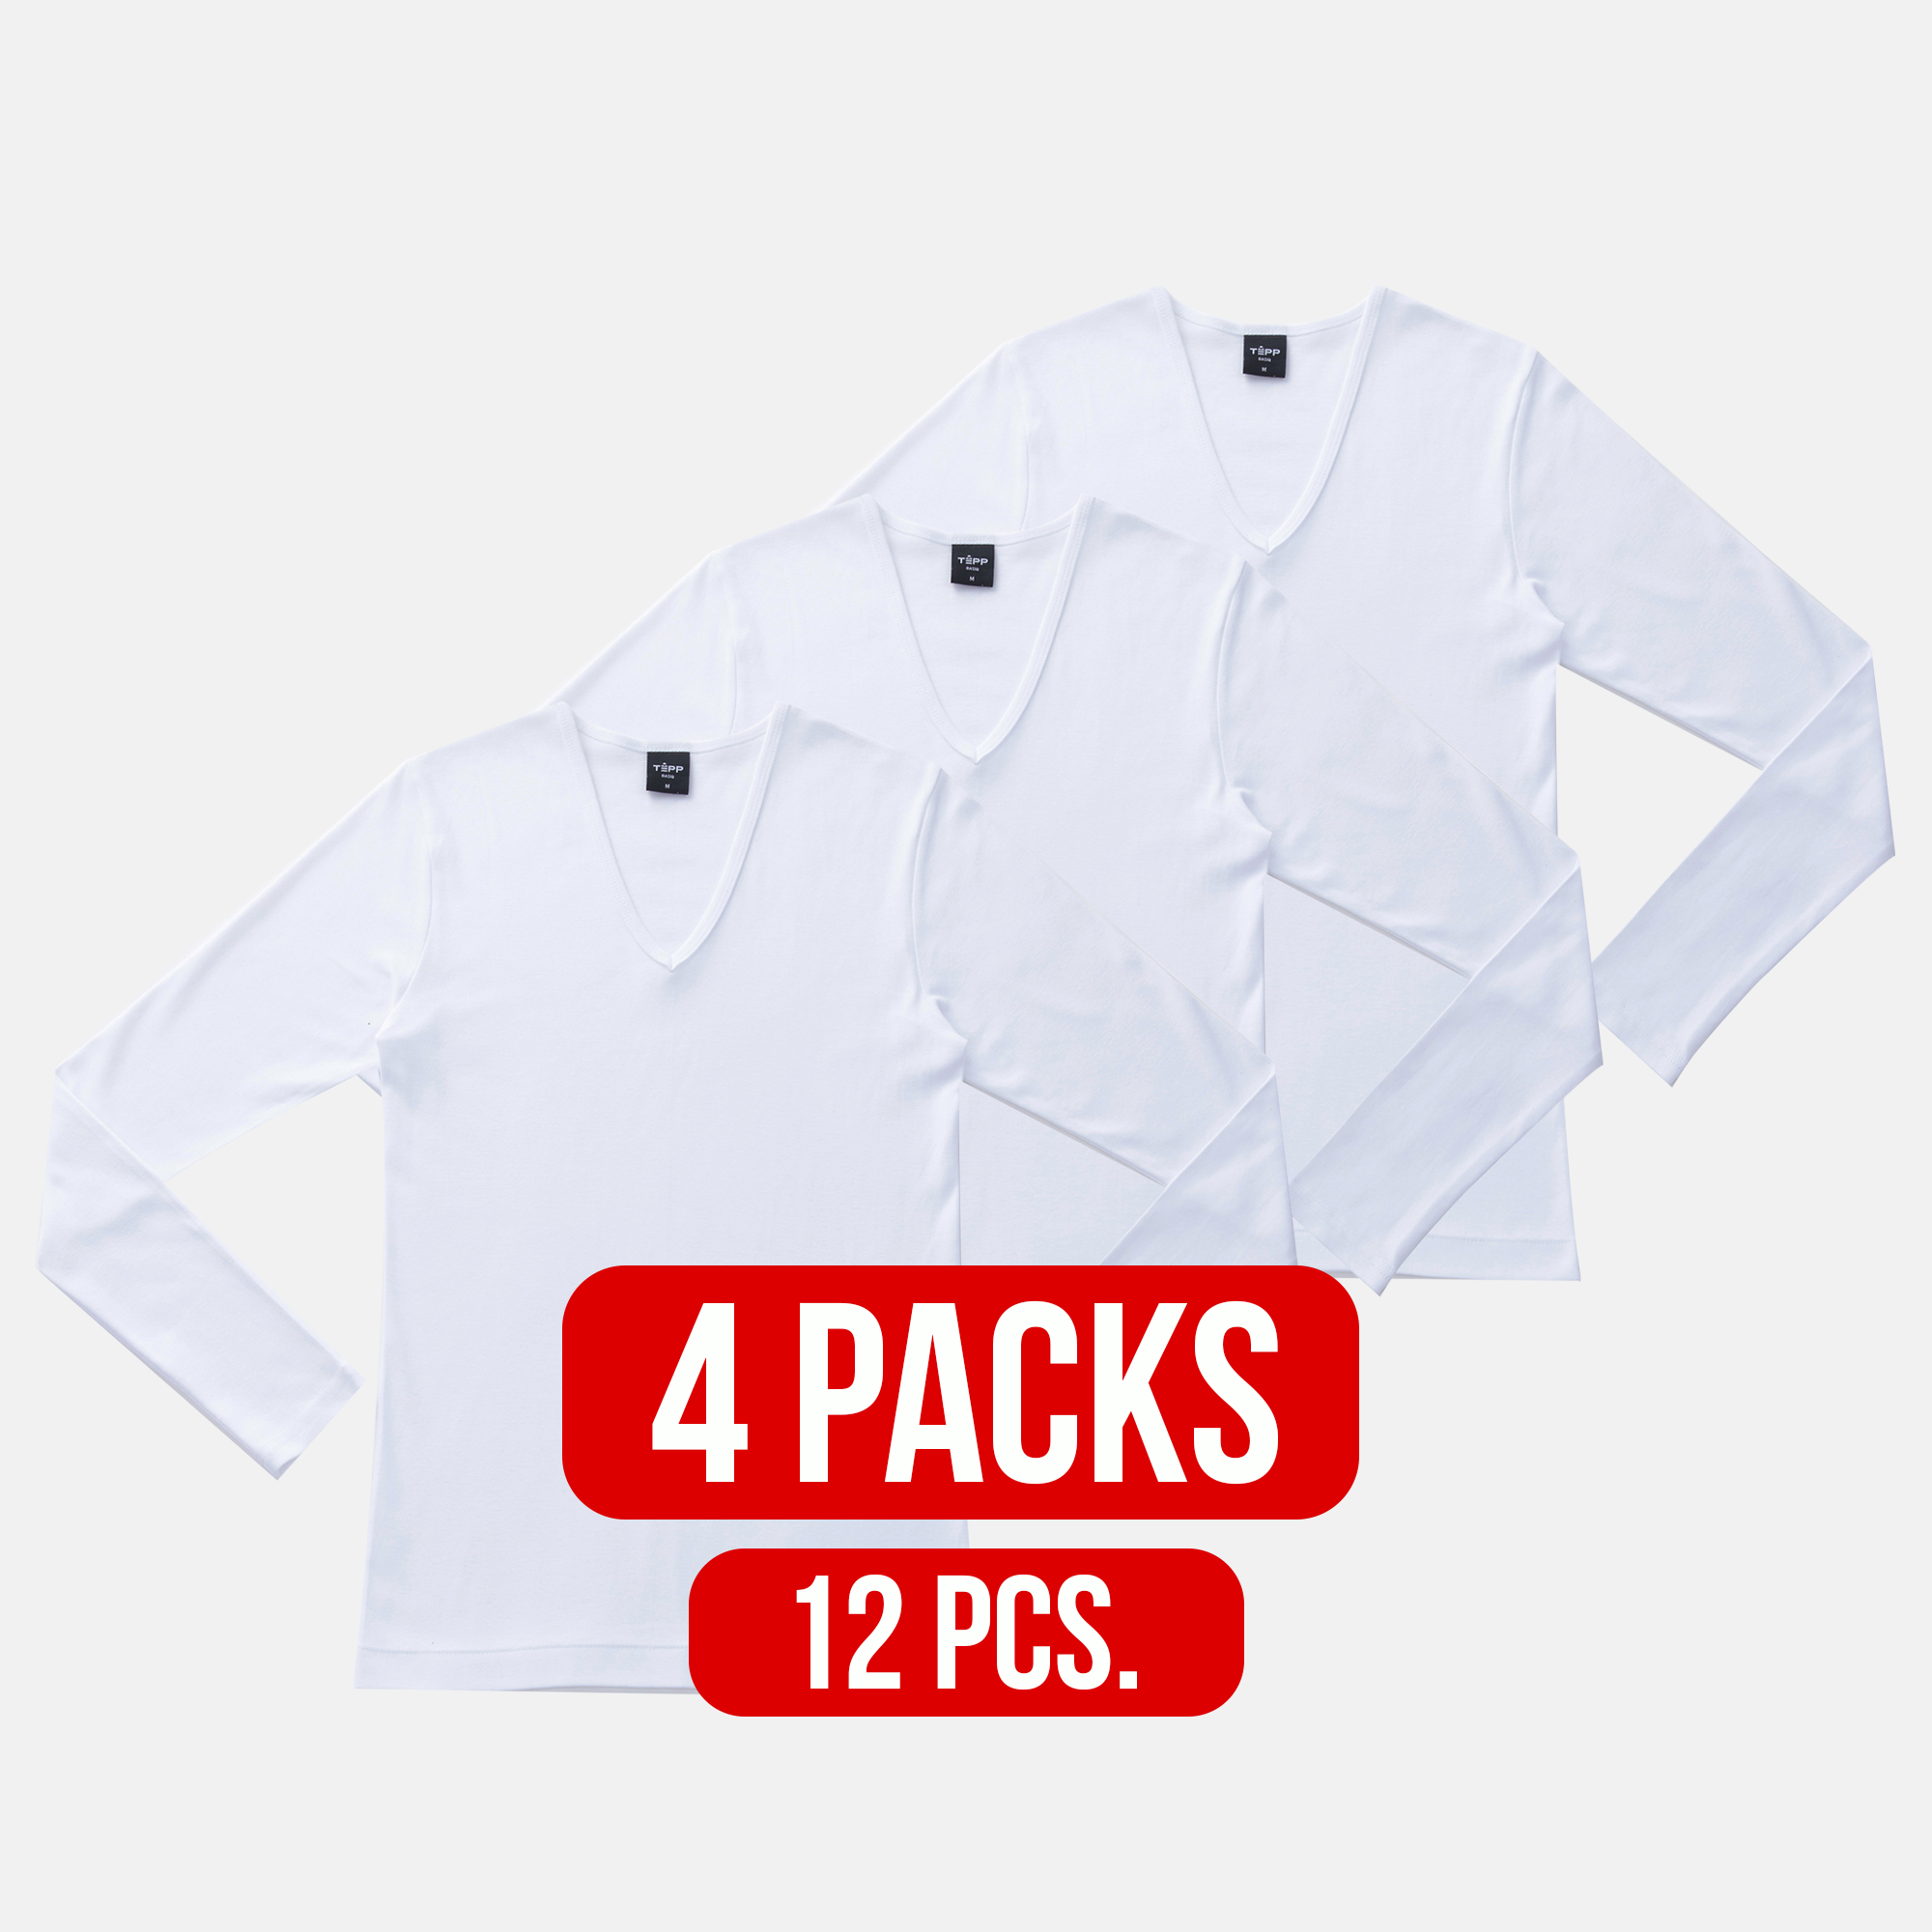 V-neck long sleeve t-shirt WHITE (4Packs)(12 PCS.)